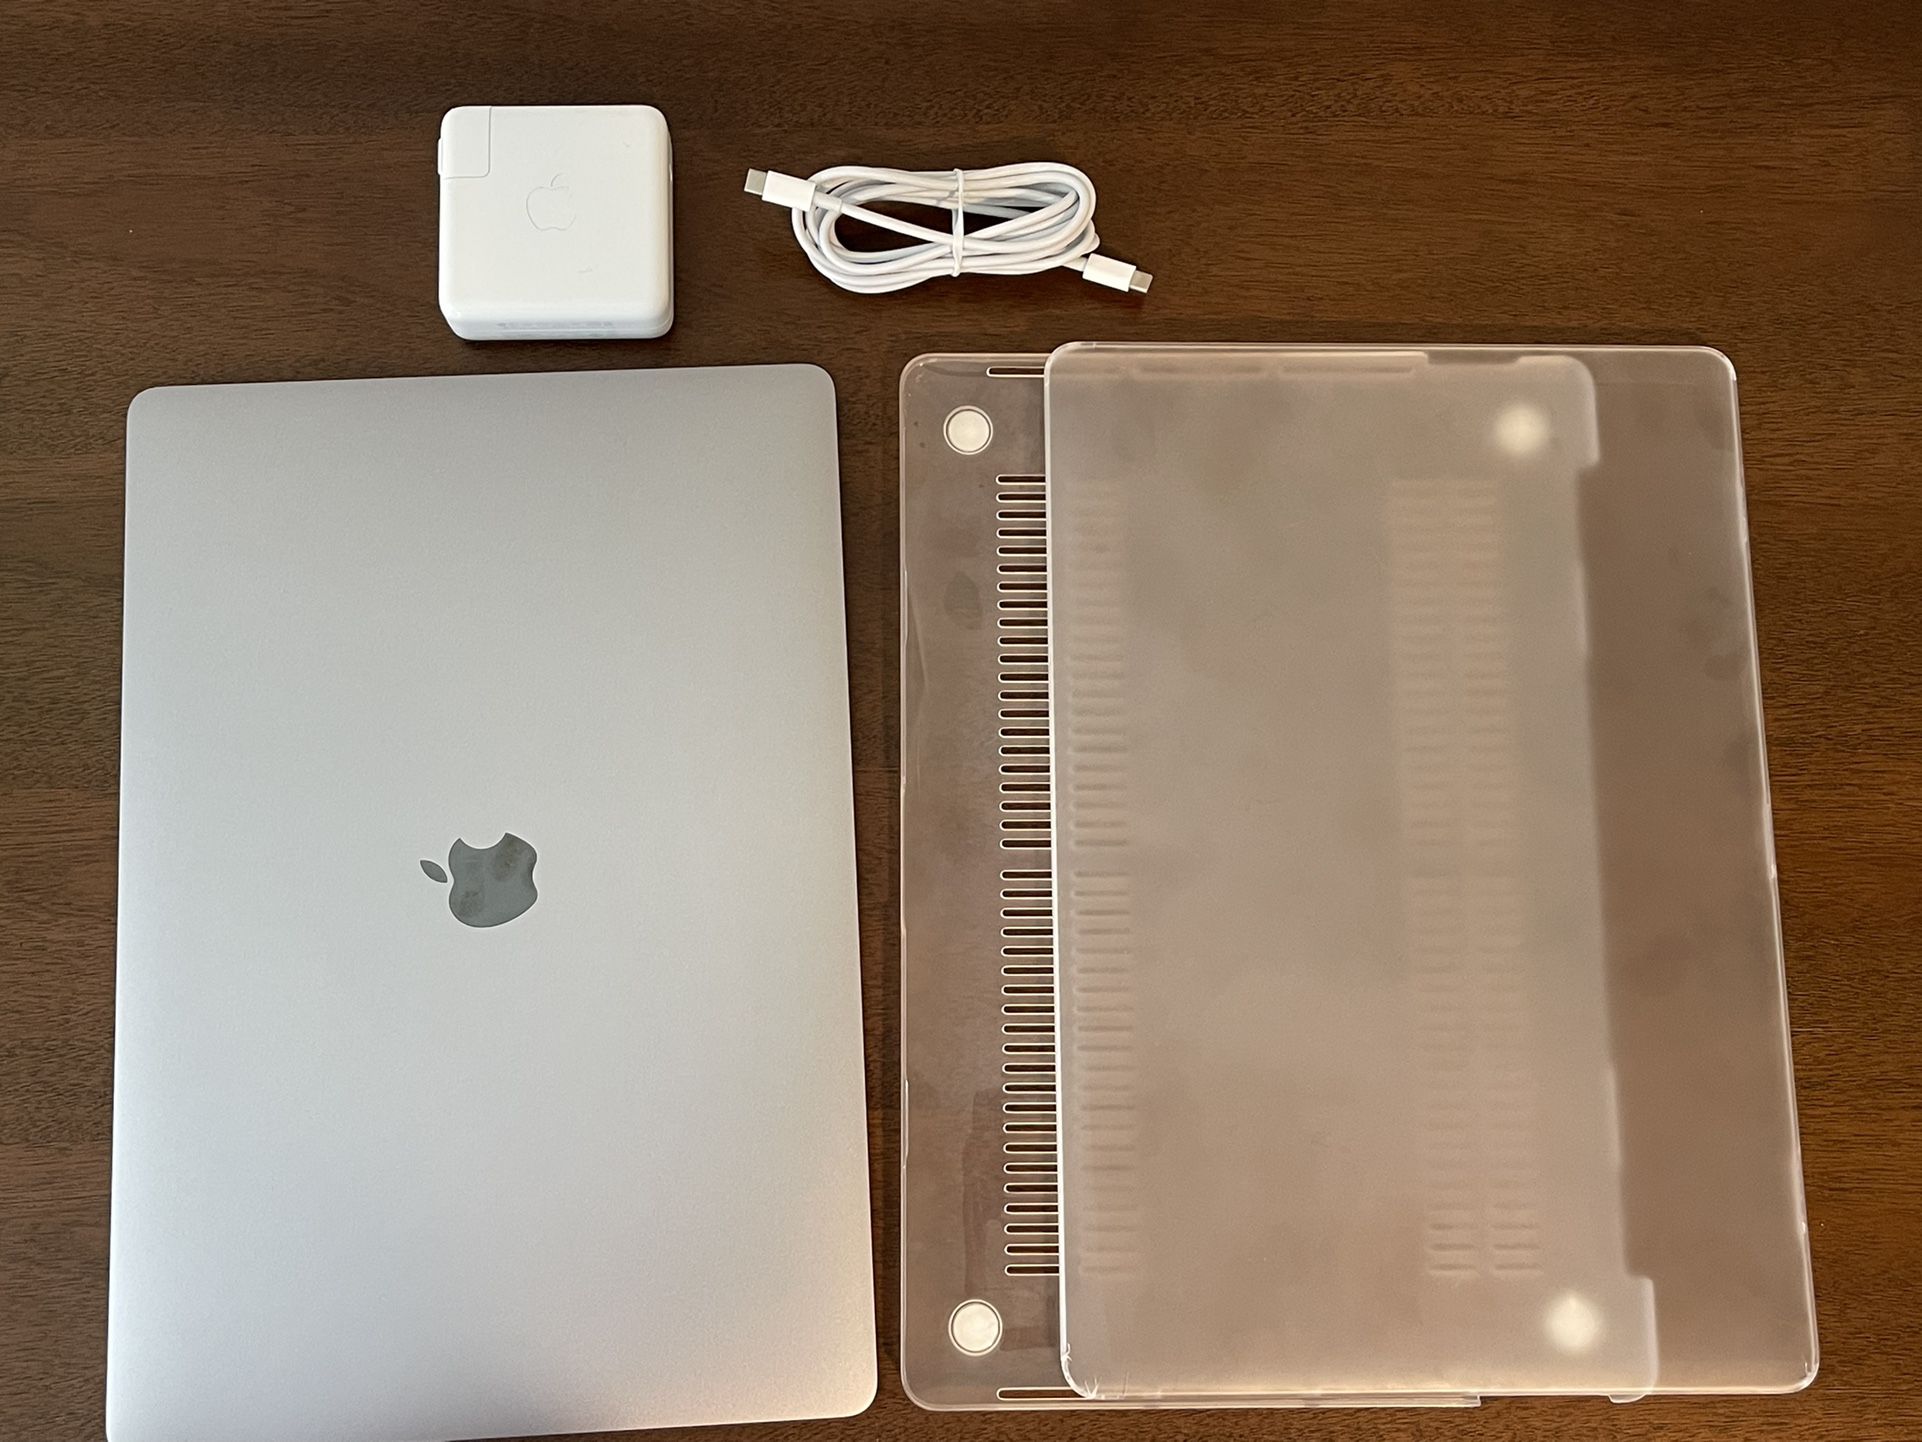 Macbook Pro 2019 16 inch | 2.3 GHz i9 | 32GB Ram | 1TB SSD